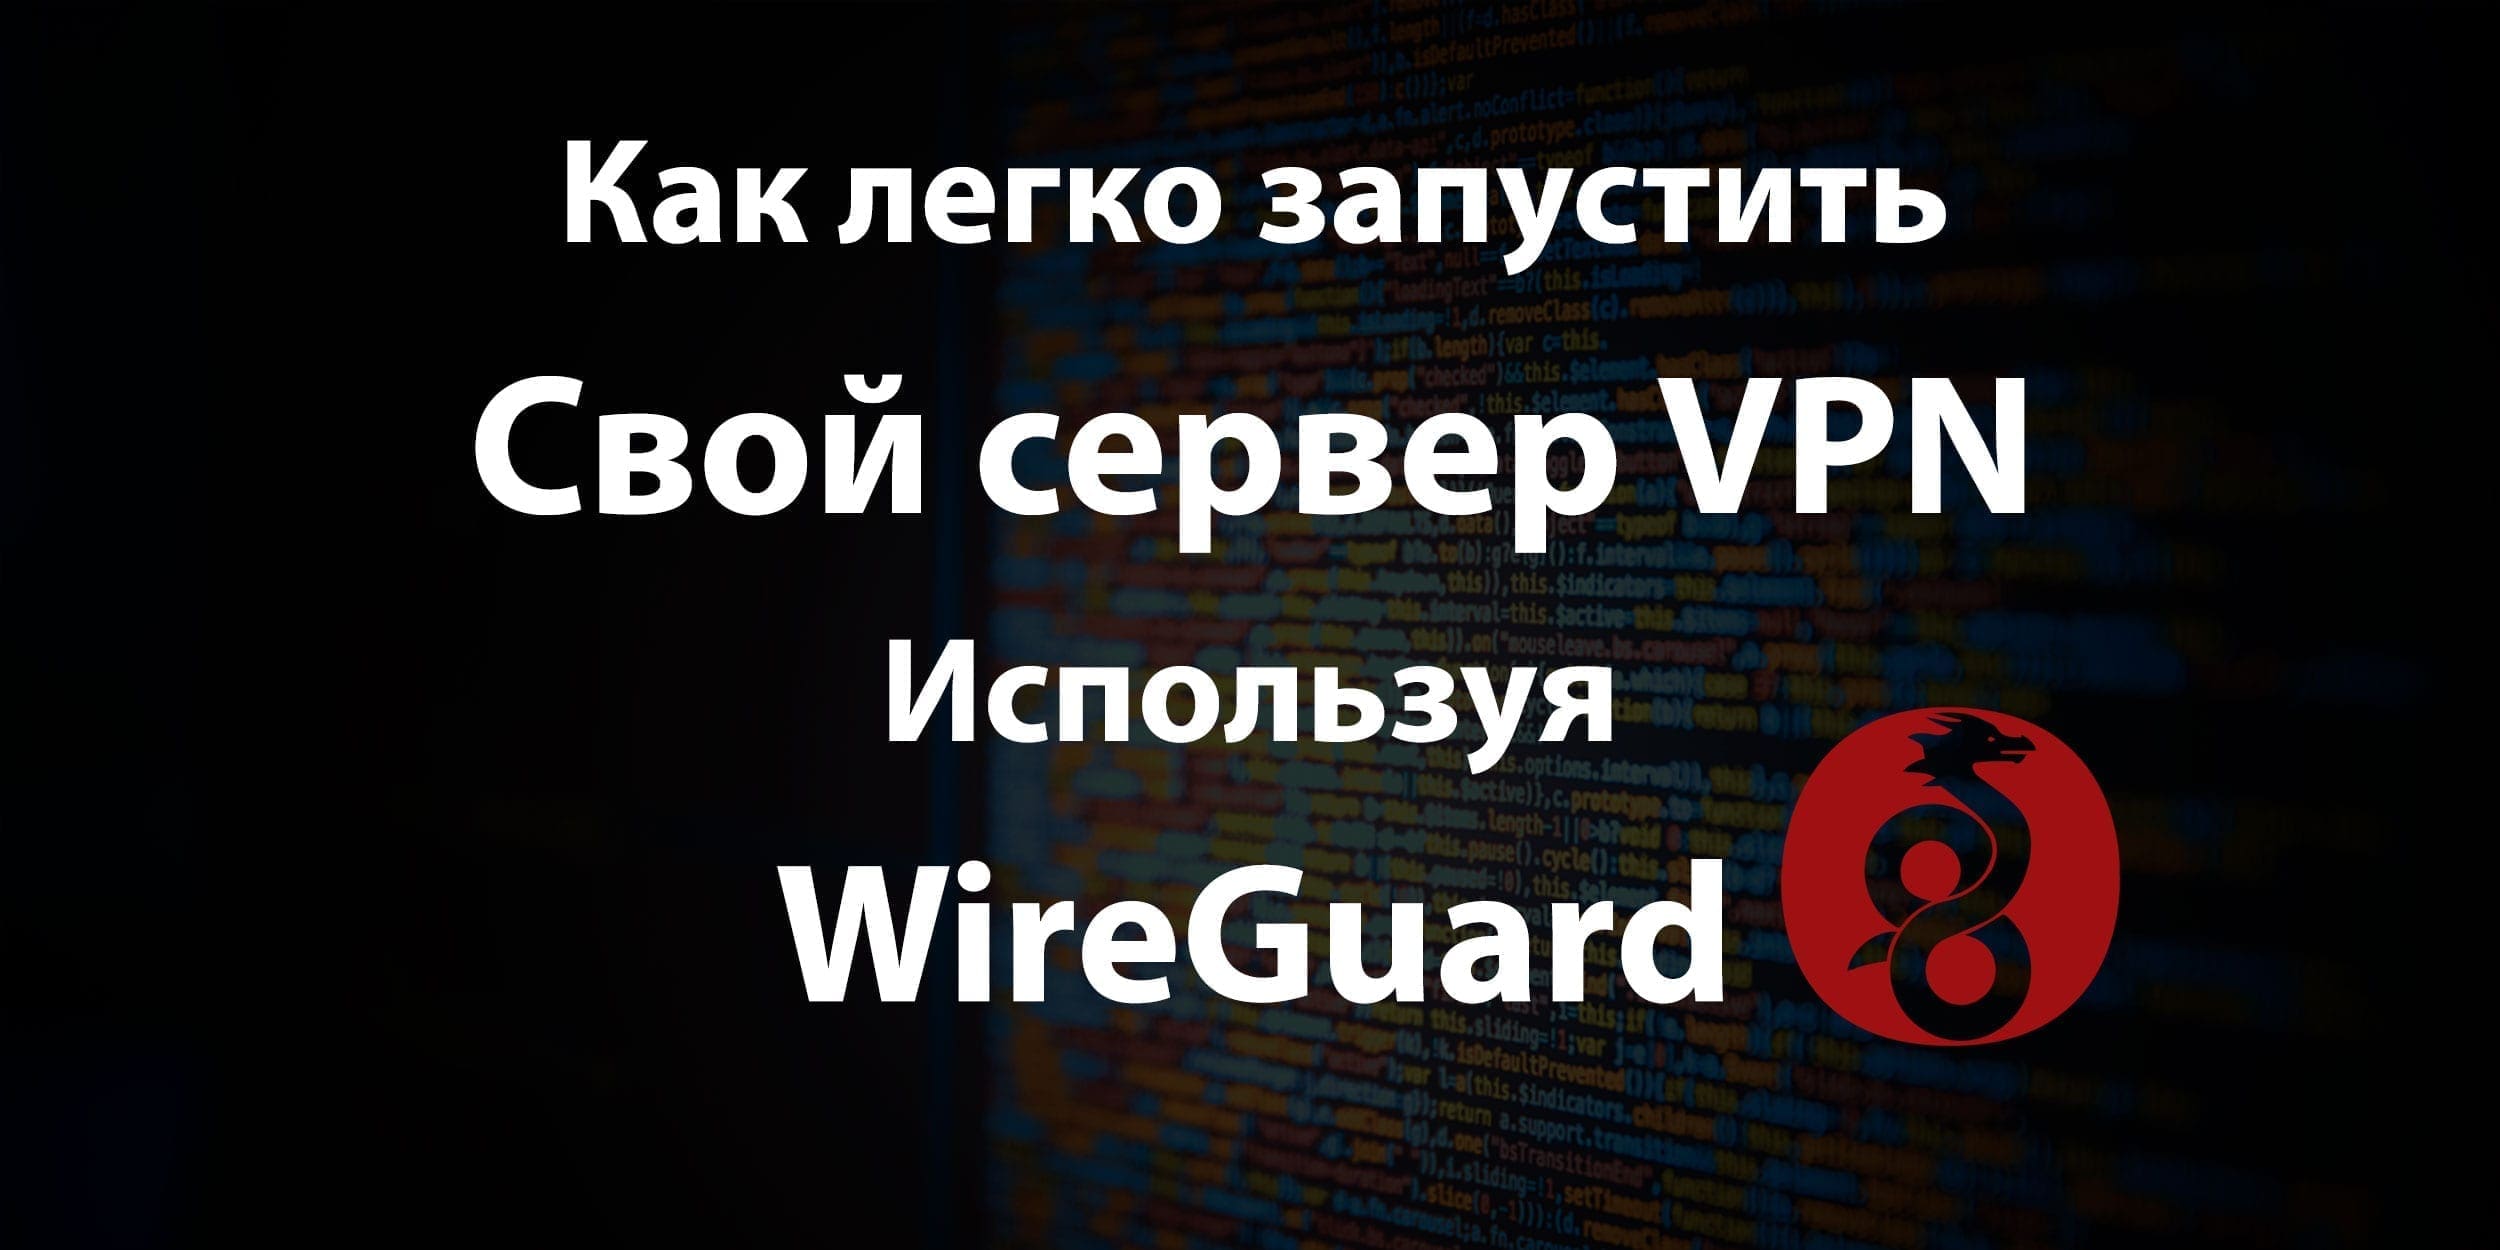 Как-легко-запустить-свой-сервер-VPN-используя-WireGuard